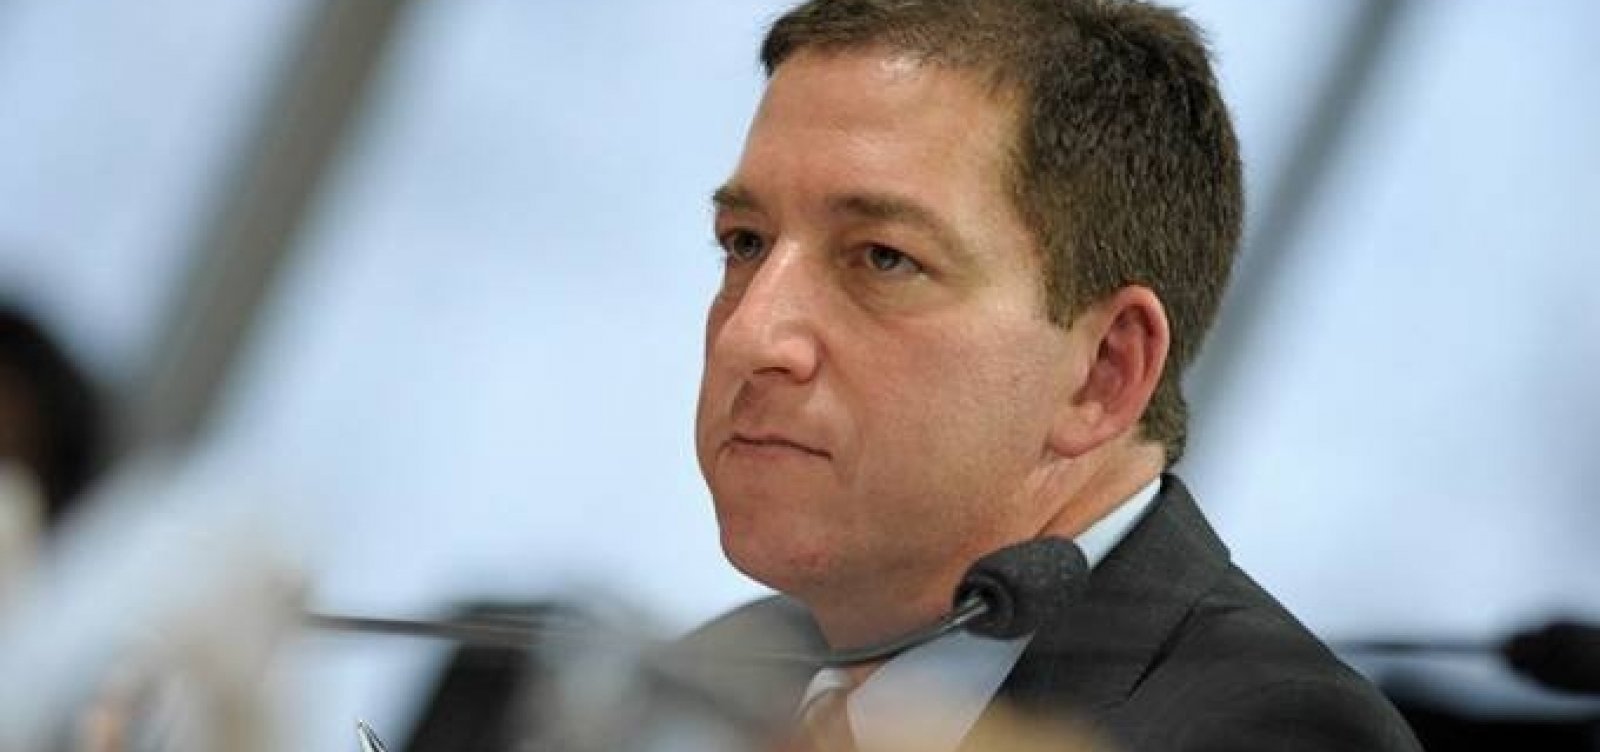 'Denúncia é tentativa óbvia de atacar a imprensa livre', diz Glenn Greenwald